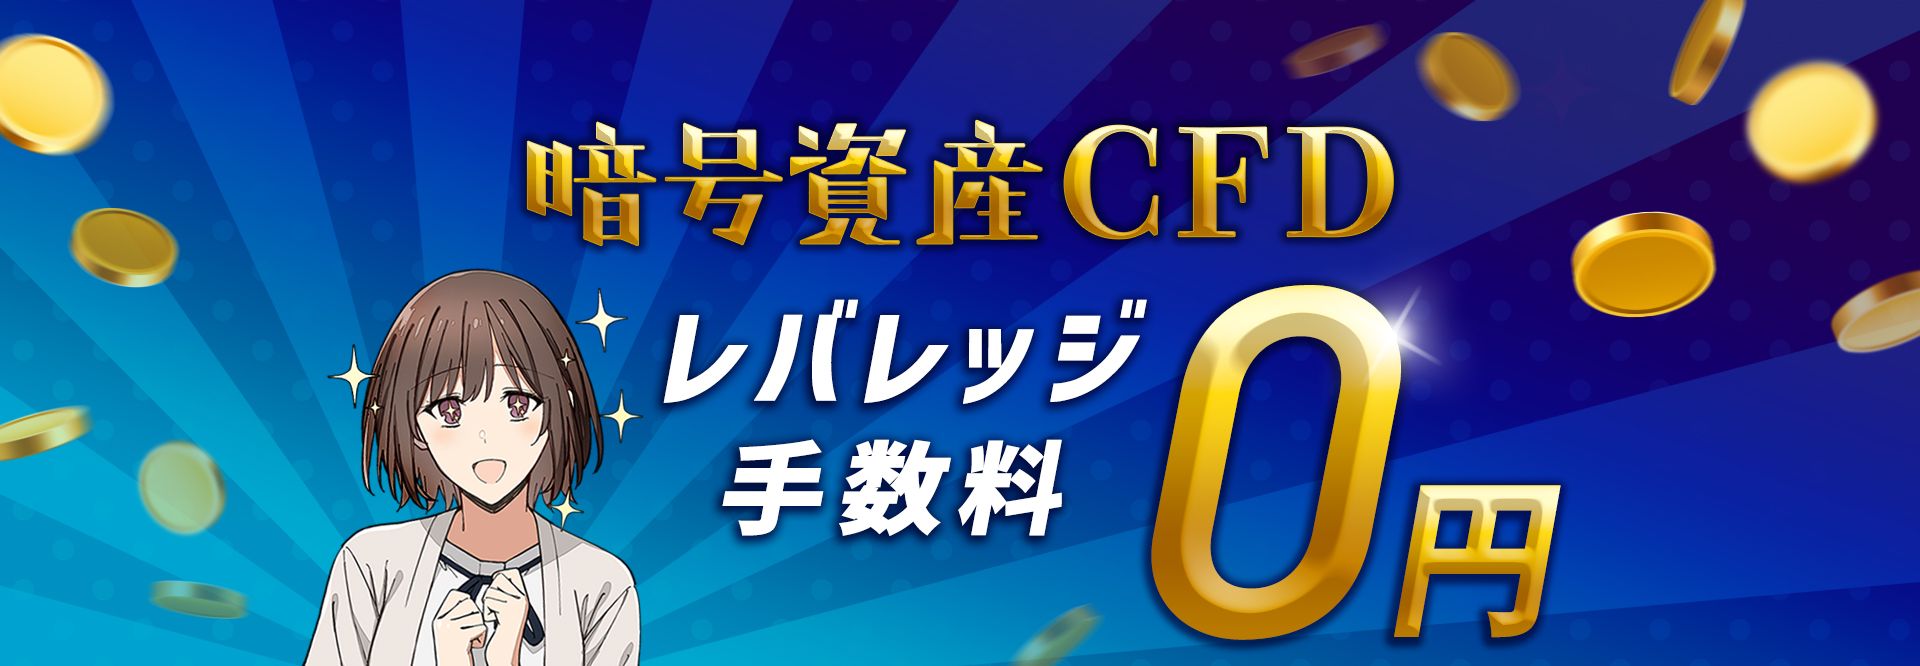 07.暗号資産CFDレバレッジ手数料0円キャンペーン 